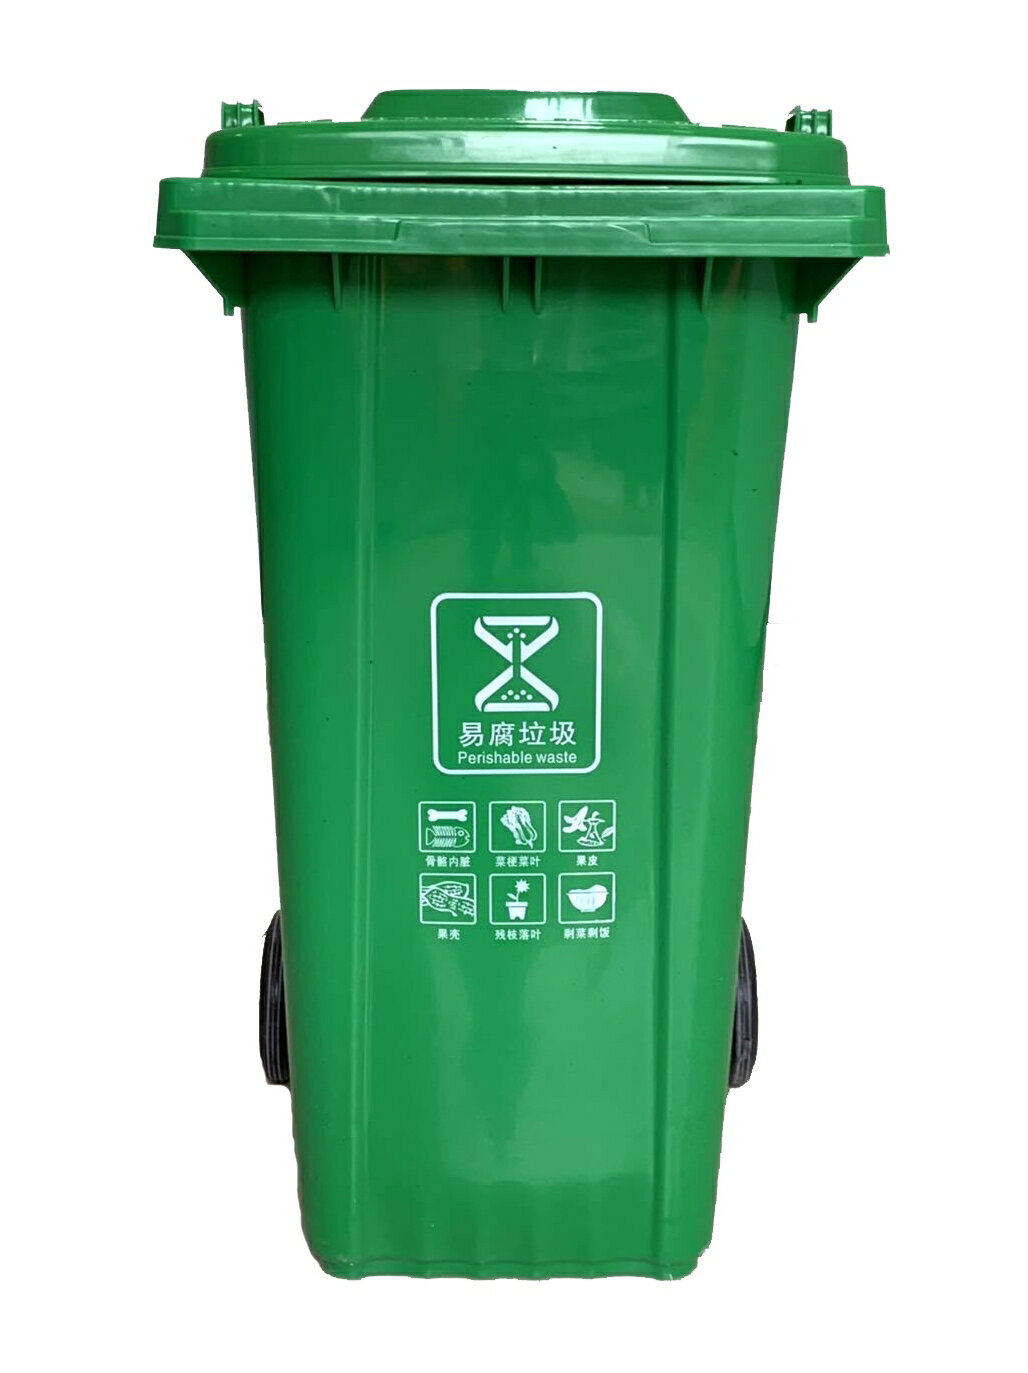 戶外垃圾桶 商用垃圾桶 垃圾桶 戶外垃圾桶大號容量工業分類廚余室外帶蓋商用大型環衛箱乾濕掛車『DD00301』